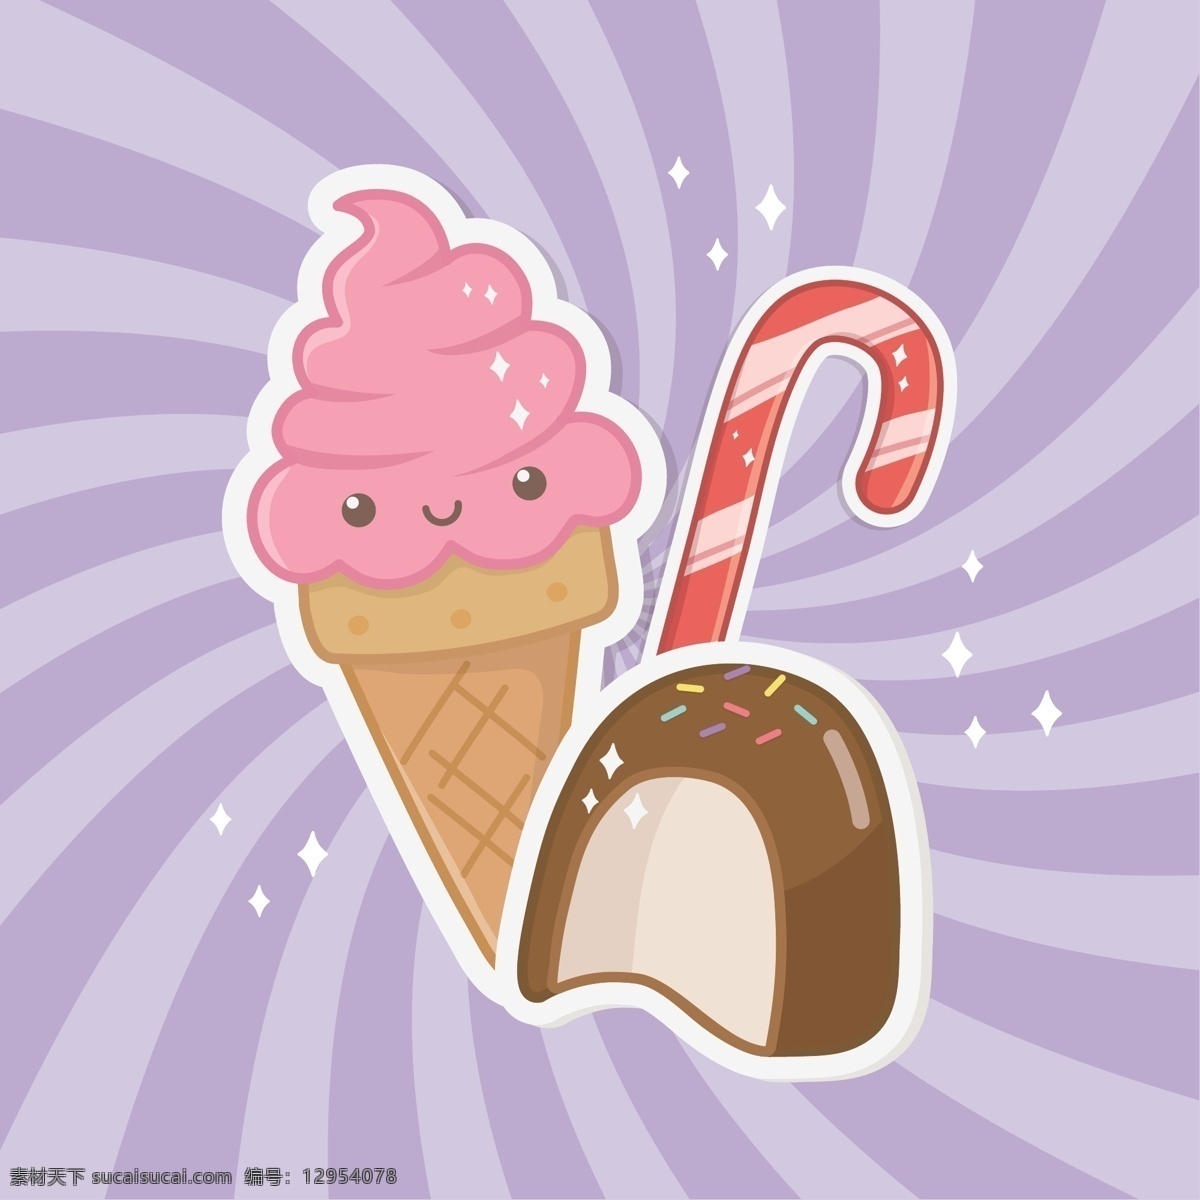 小 清新 点心 卡通 图案 小清新 彩色 创意 夏日装饰 下午茶 蛋糕 冰淇淋 装饰图案 冰棒 巧克力 面包 甜甜圈 矢量插画